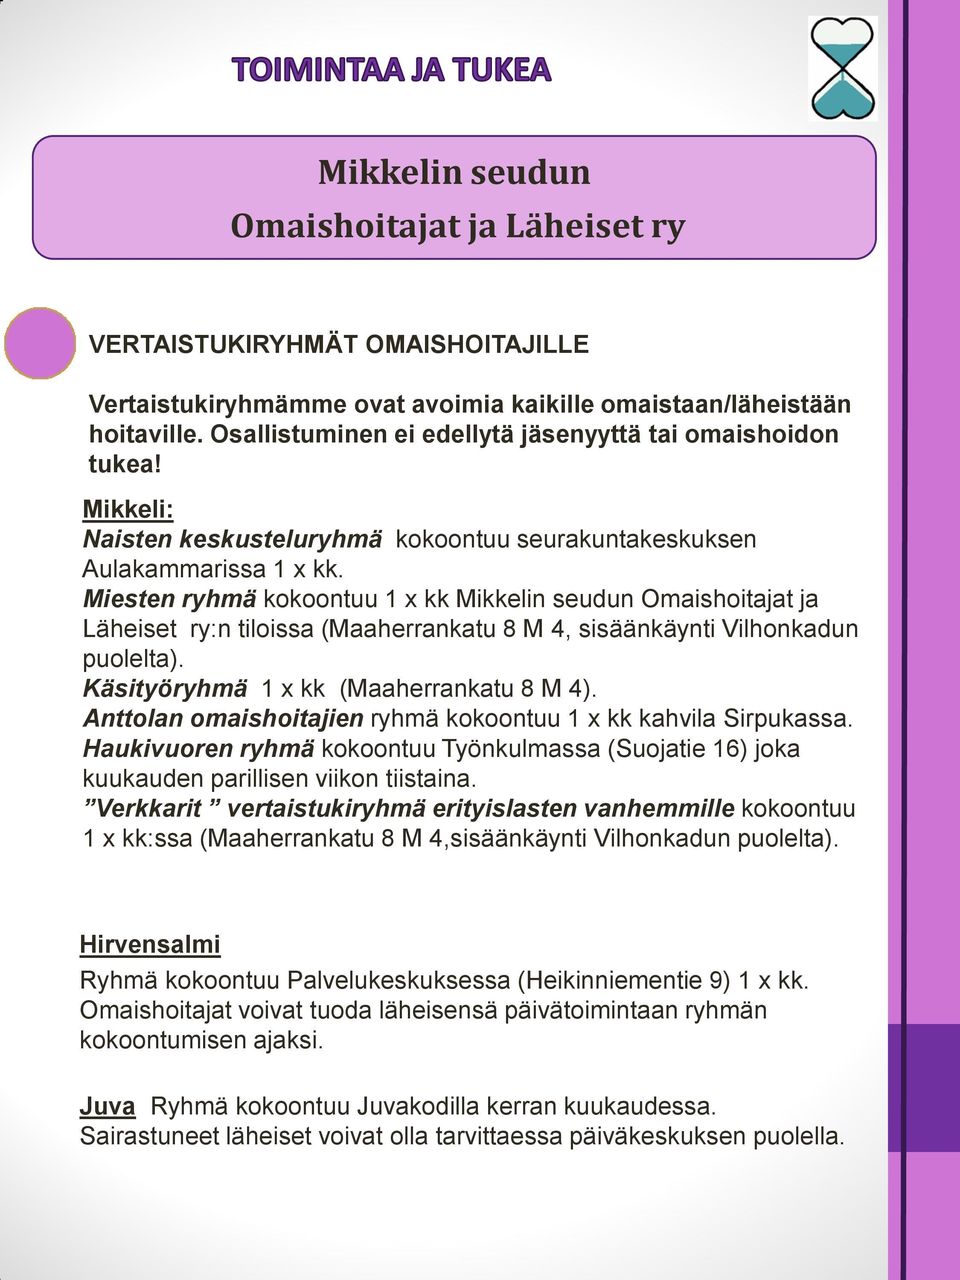 Miesten ryhmä kokoontuu 1 x kk Mikkelin seudun Omaishoitajat ja Läheiset ry:n tiloissa (Maaherrankatu 8 M 4, sisäänkäynti Vilhonkadun puolelta). Käsityöryhmä 1 x kk (Maaherrankatu 8 M 4).